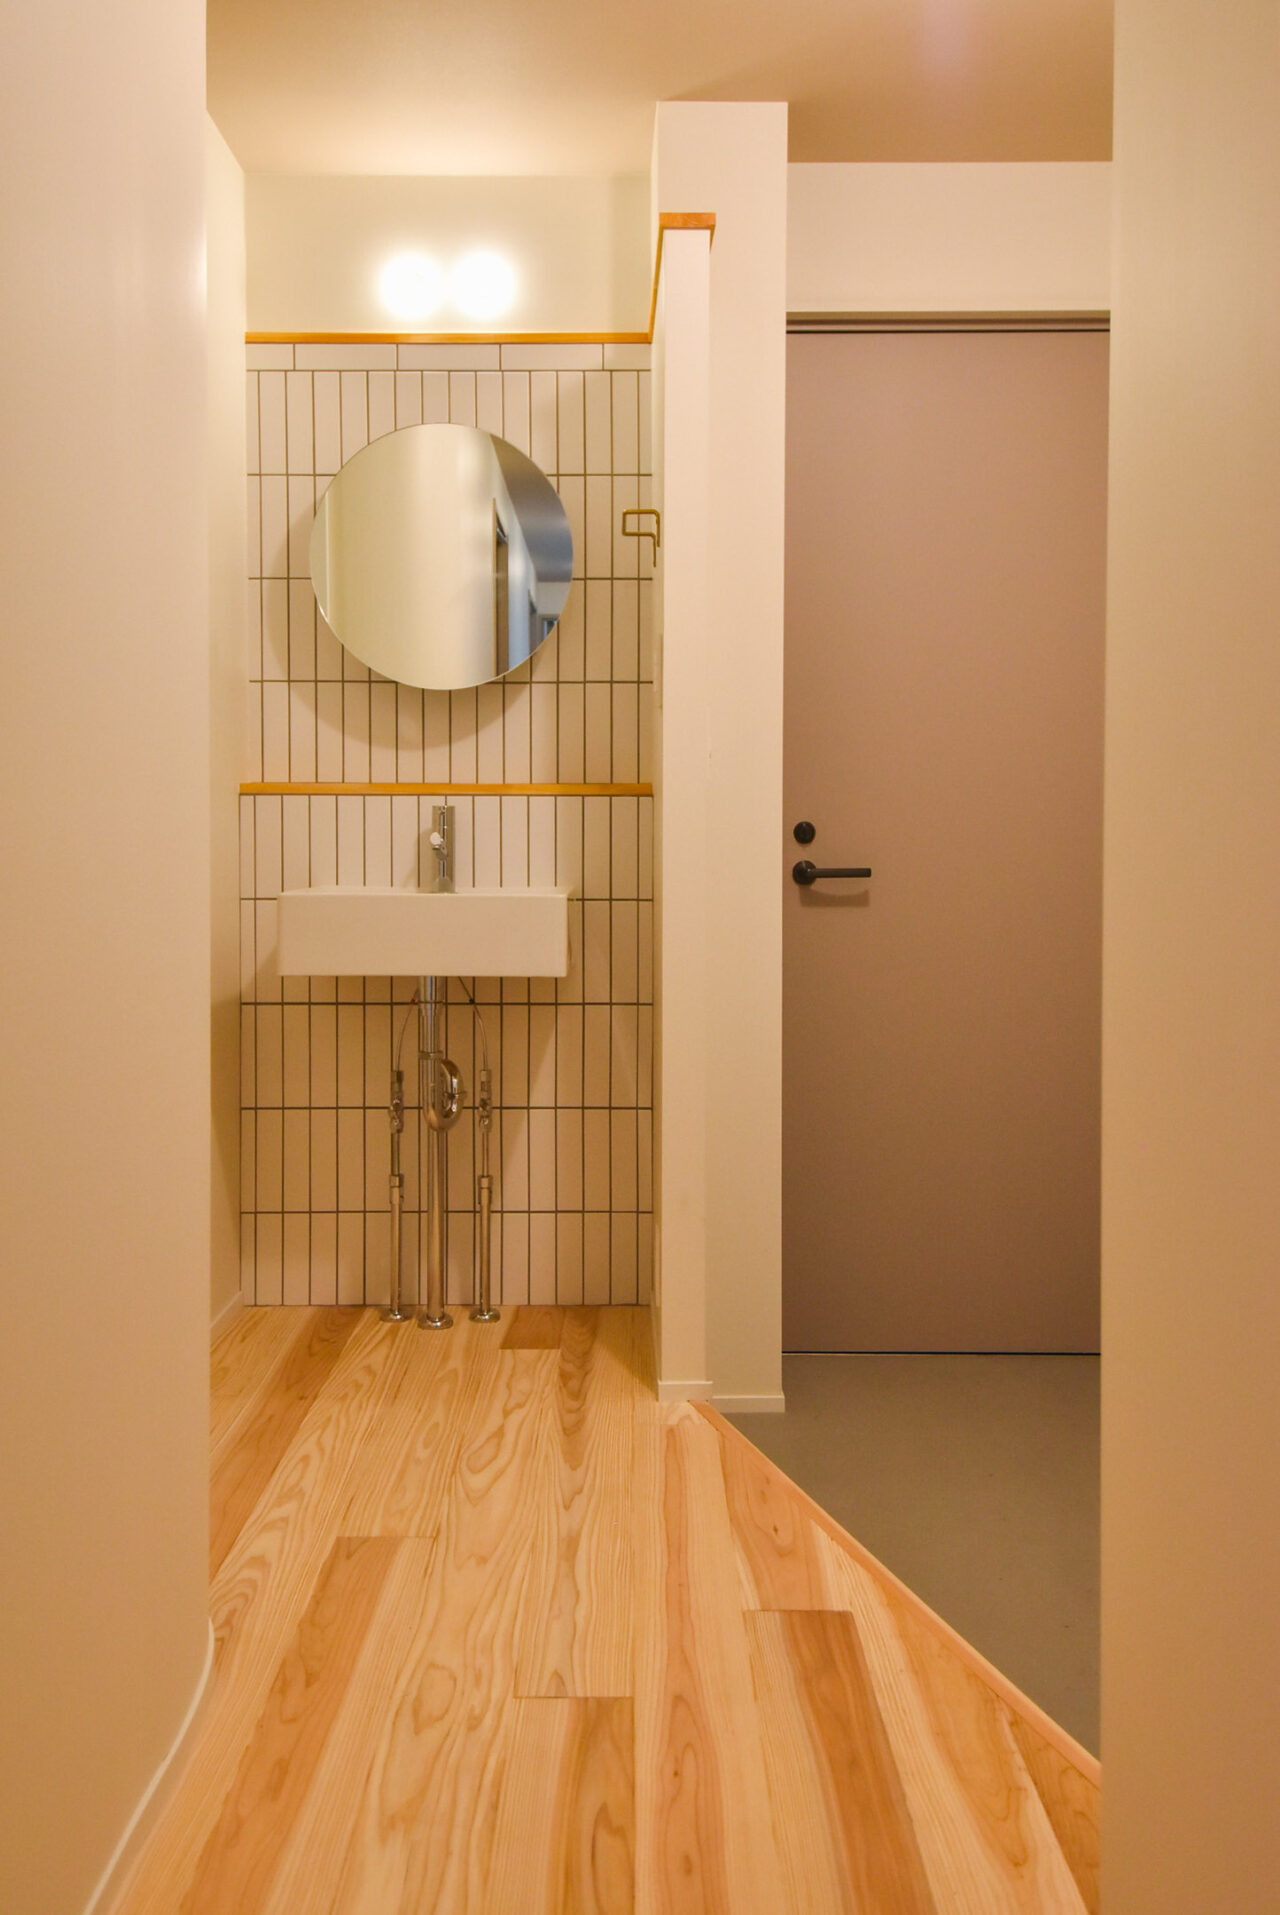 タイルの壁と丸い鏡が特徴の洗面所。シンプルな洗面台と木製の床がモダンで清潔感のある雰囲気を作り出しています。